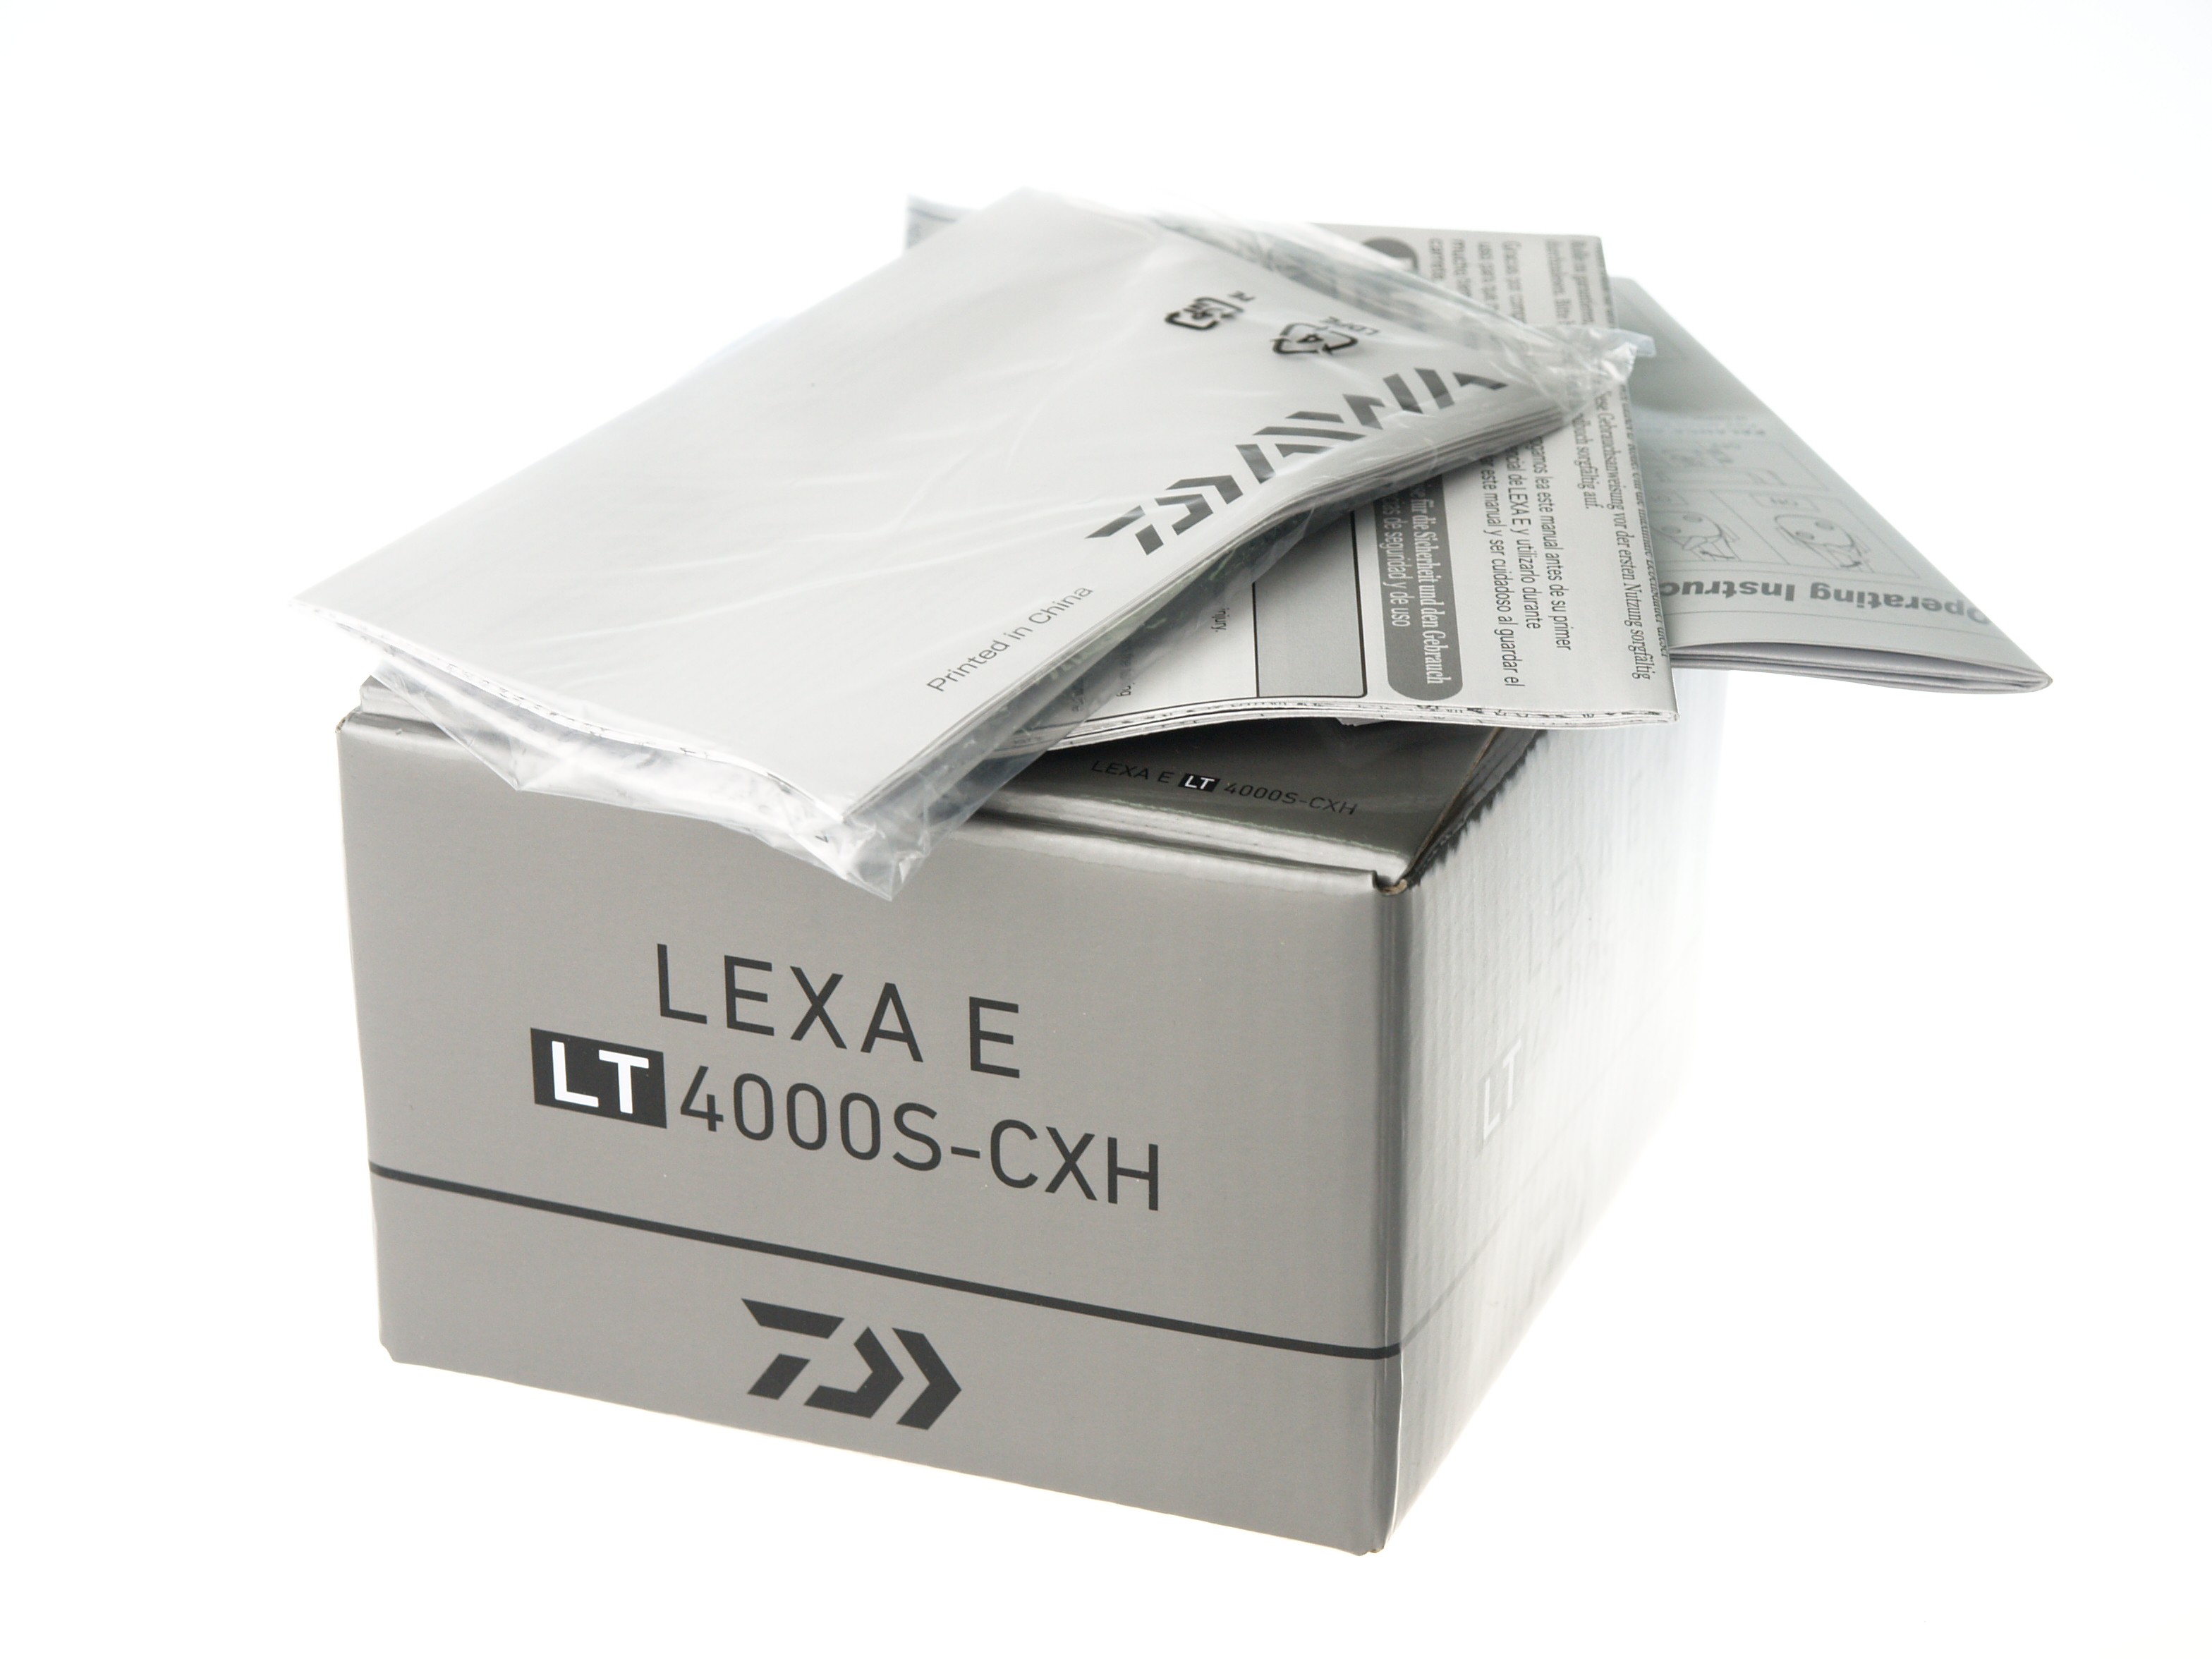 Катушка Daiwa 19 Lexa E LT 4000S-CXH купить в интернет-магазине